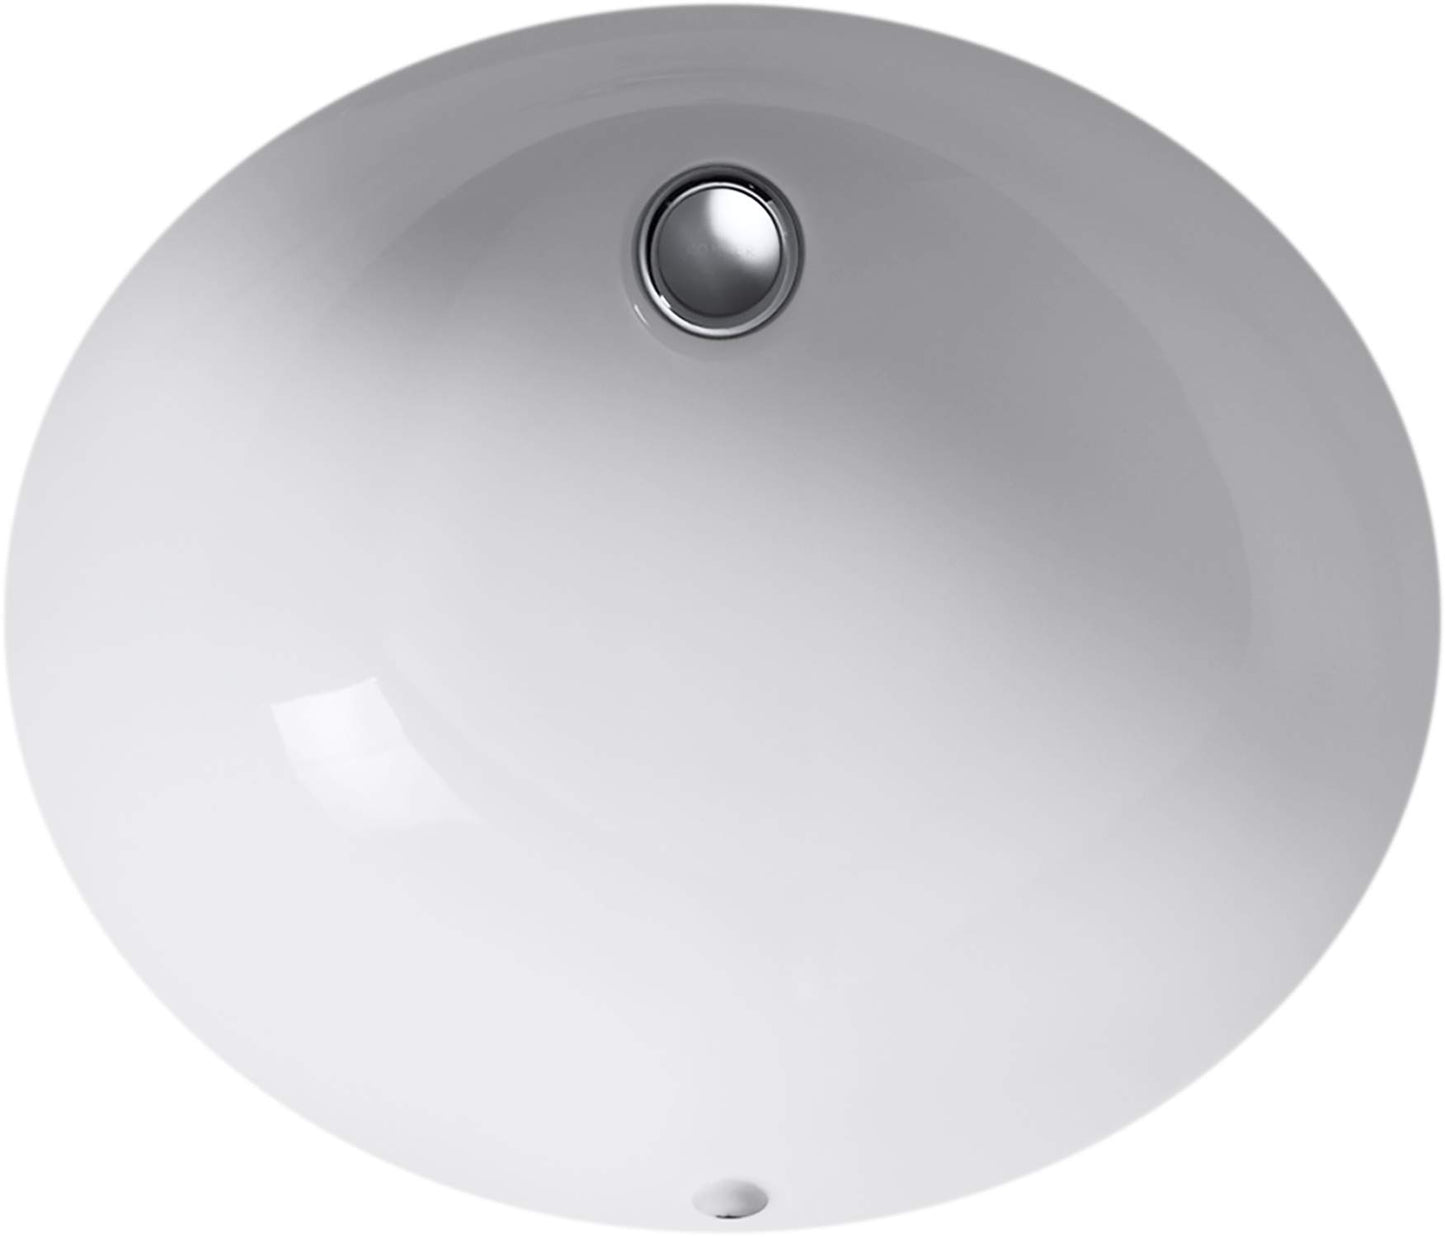 KOHLER K-2210-0 Caxton Under-Mount Bathroom Sink, White - Like New